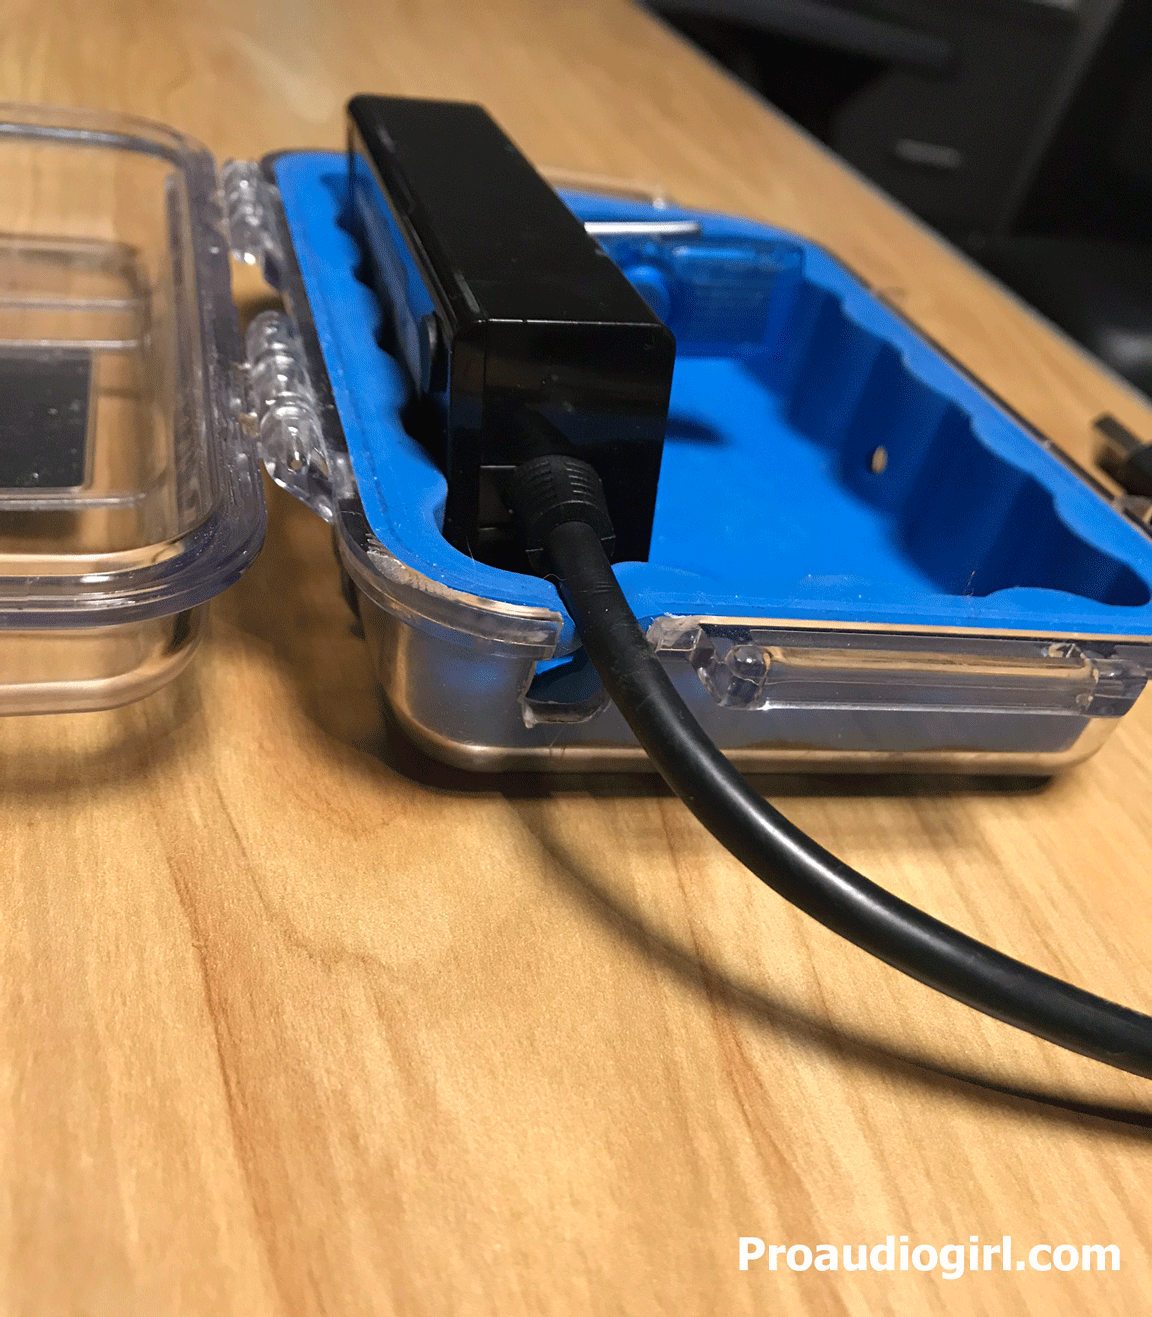 Dongle USB iLok Stoage Solution